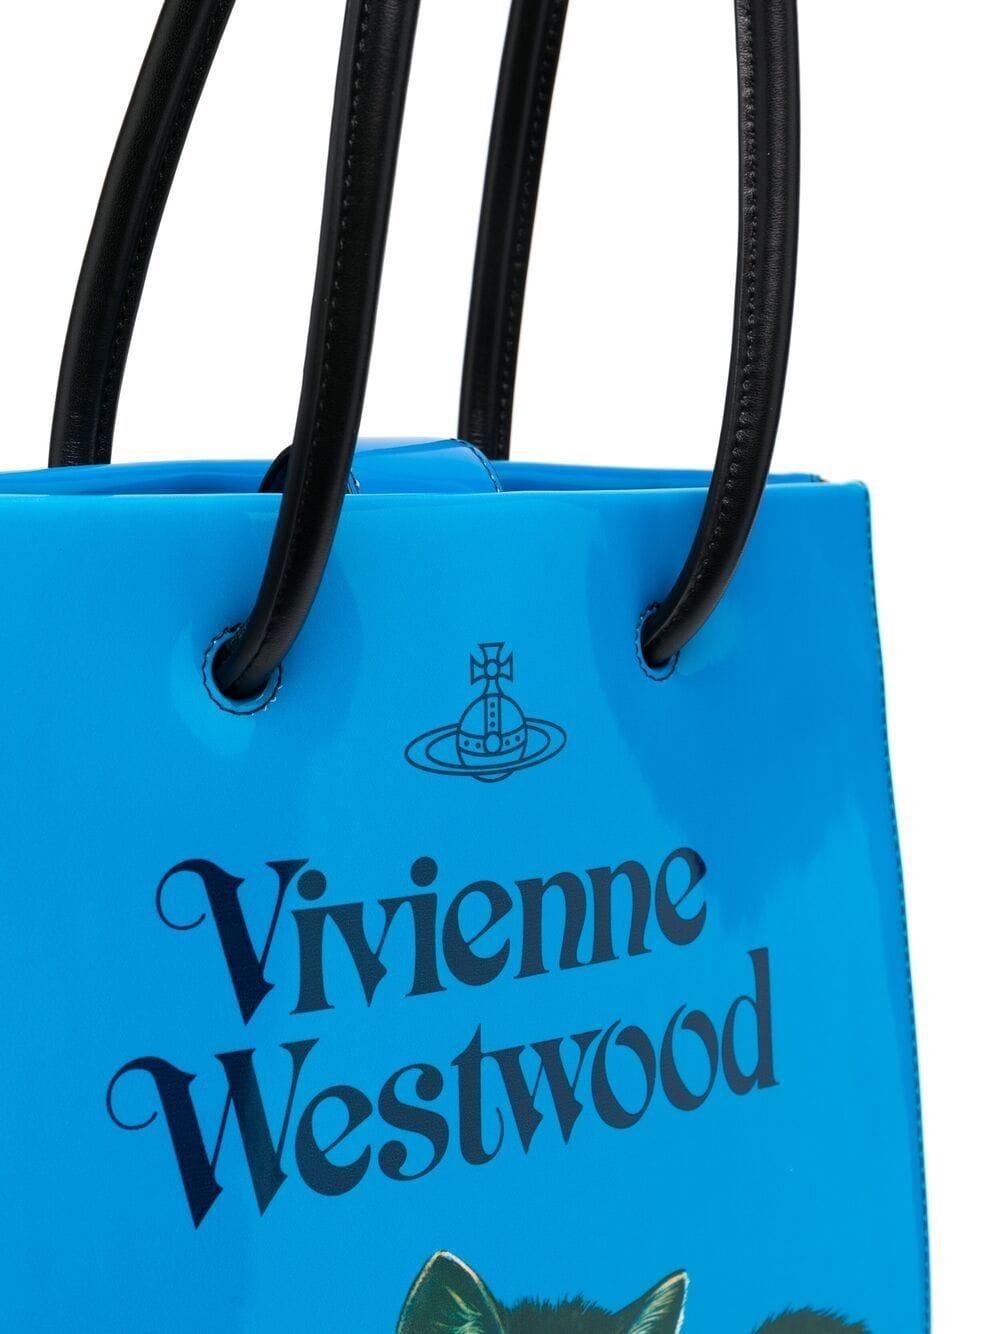 カテゴリ Vivienne Westwood - Vivienne Westwood 新品 オーブ